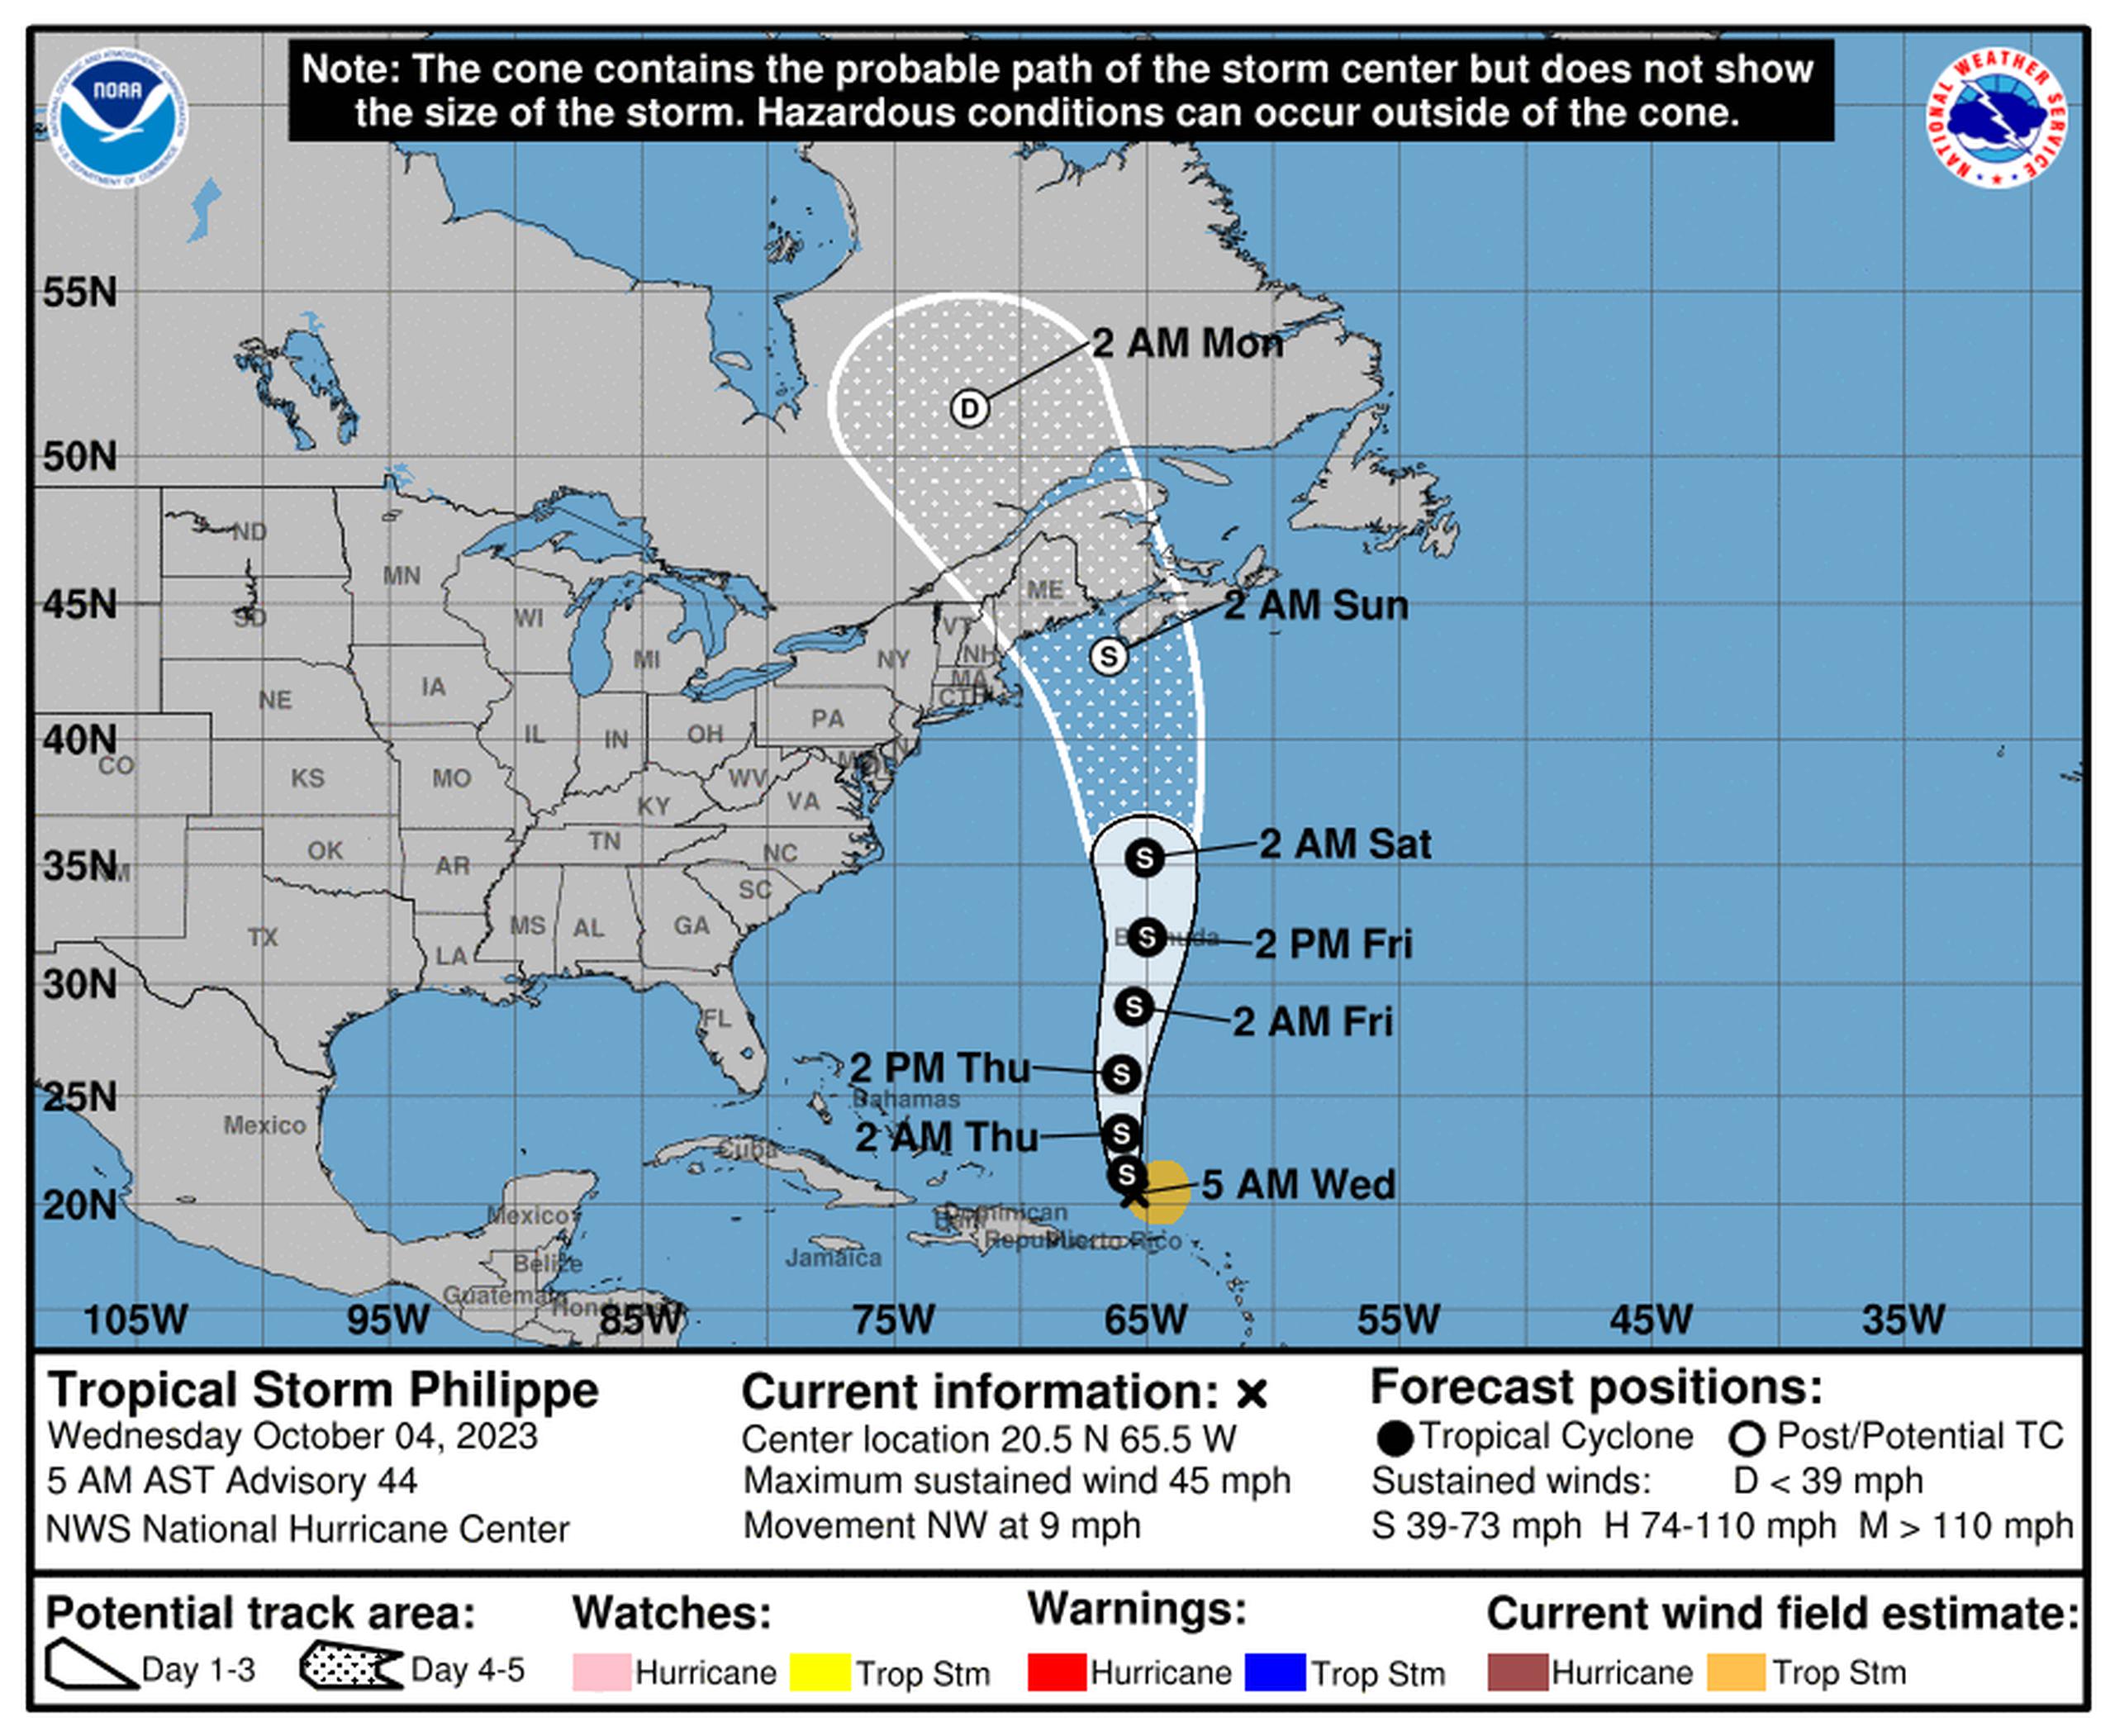 Pronóstico de la tormenta tropical Philippe emitido a las 5:00 de la mañana del 4 de octubre de 2023.